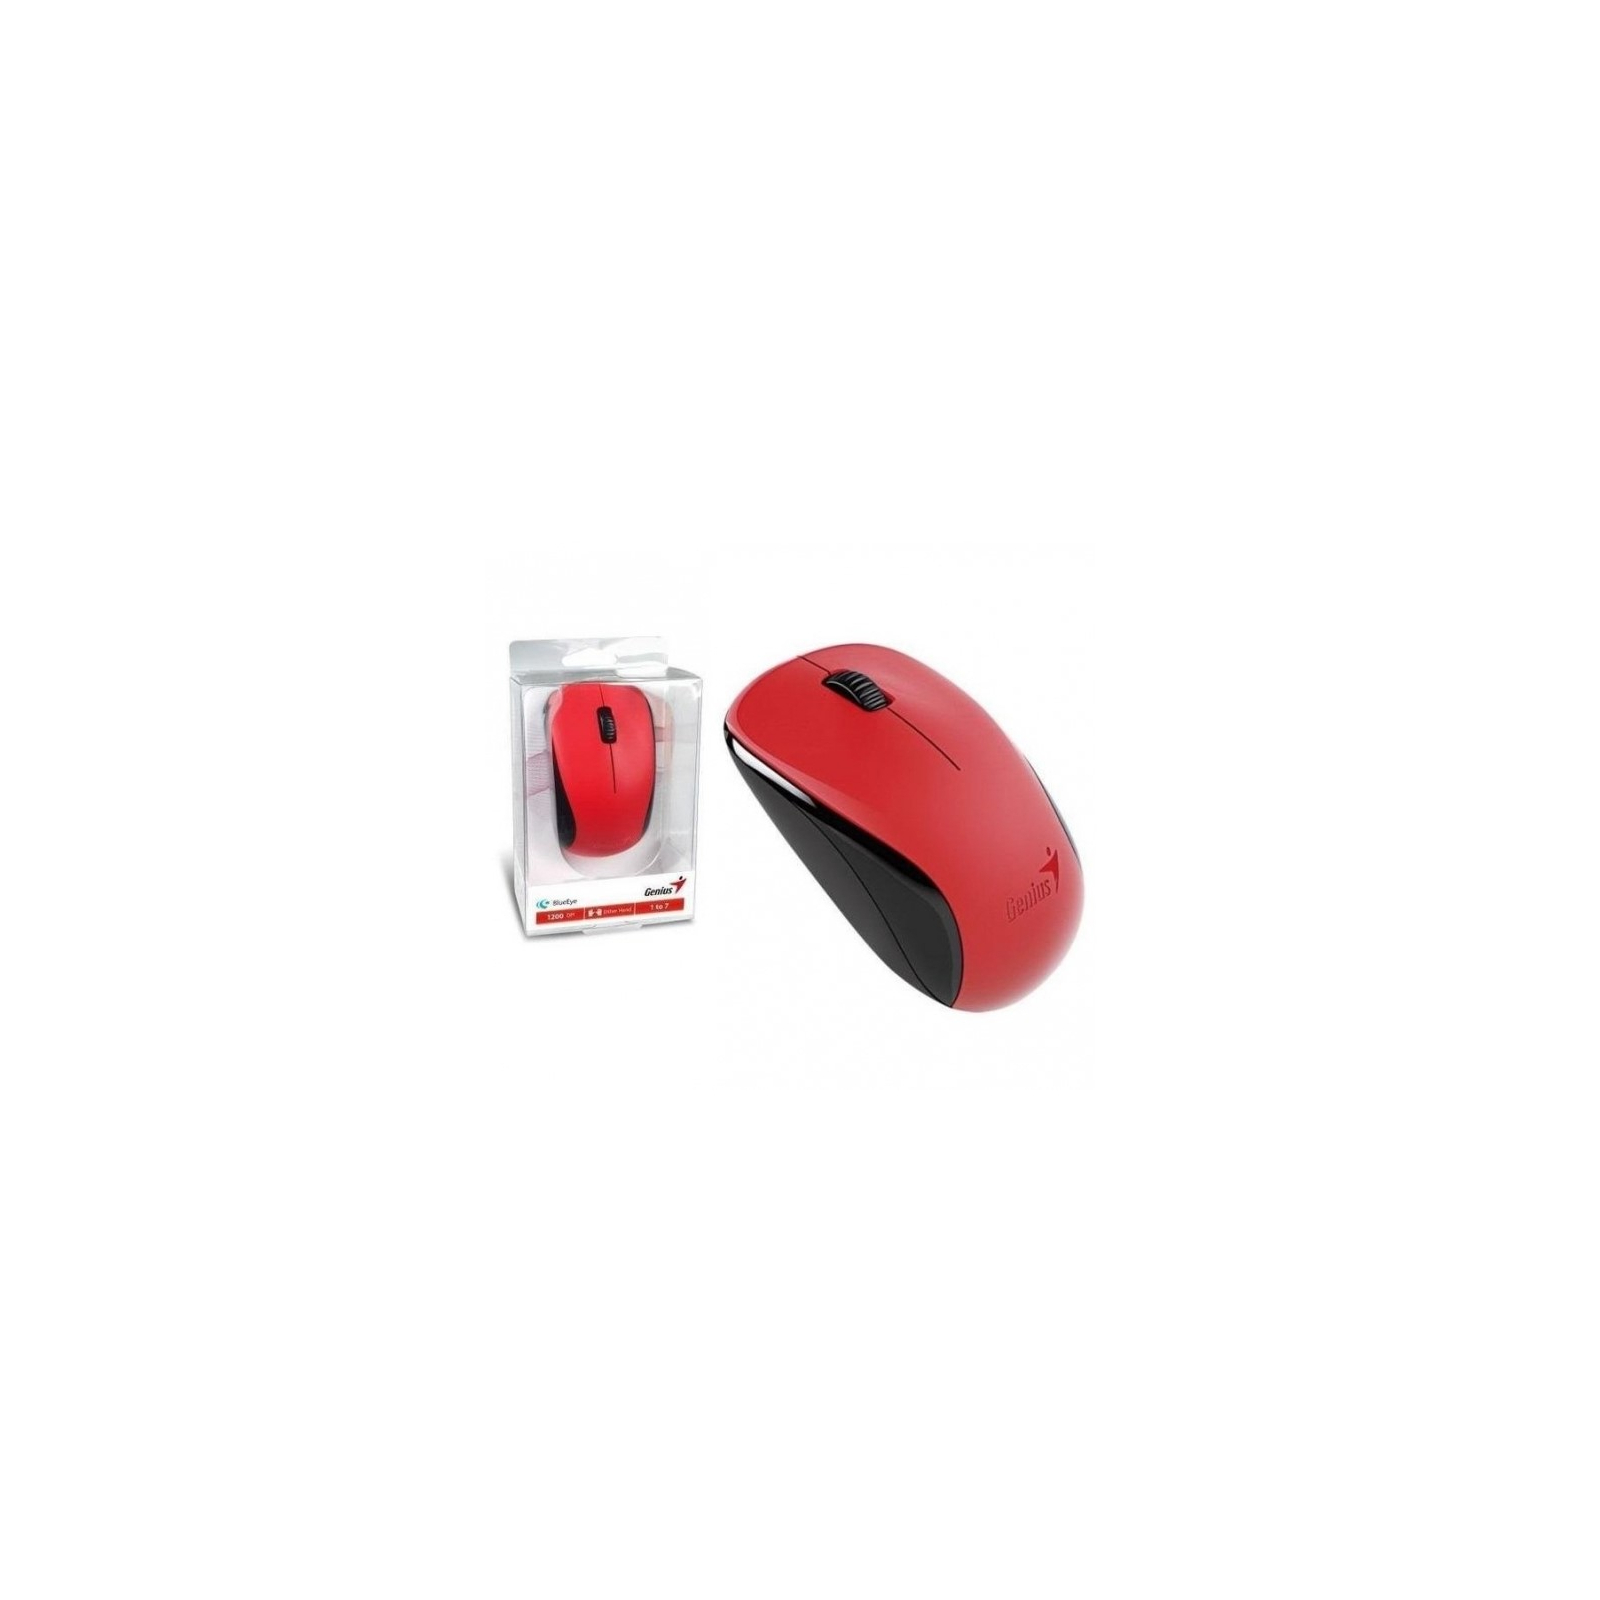 Мышка Genius NX-7000 Red (31030012403) изображение 3